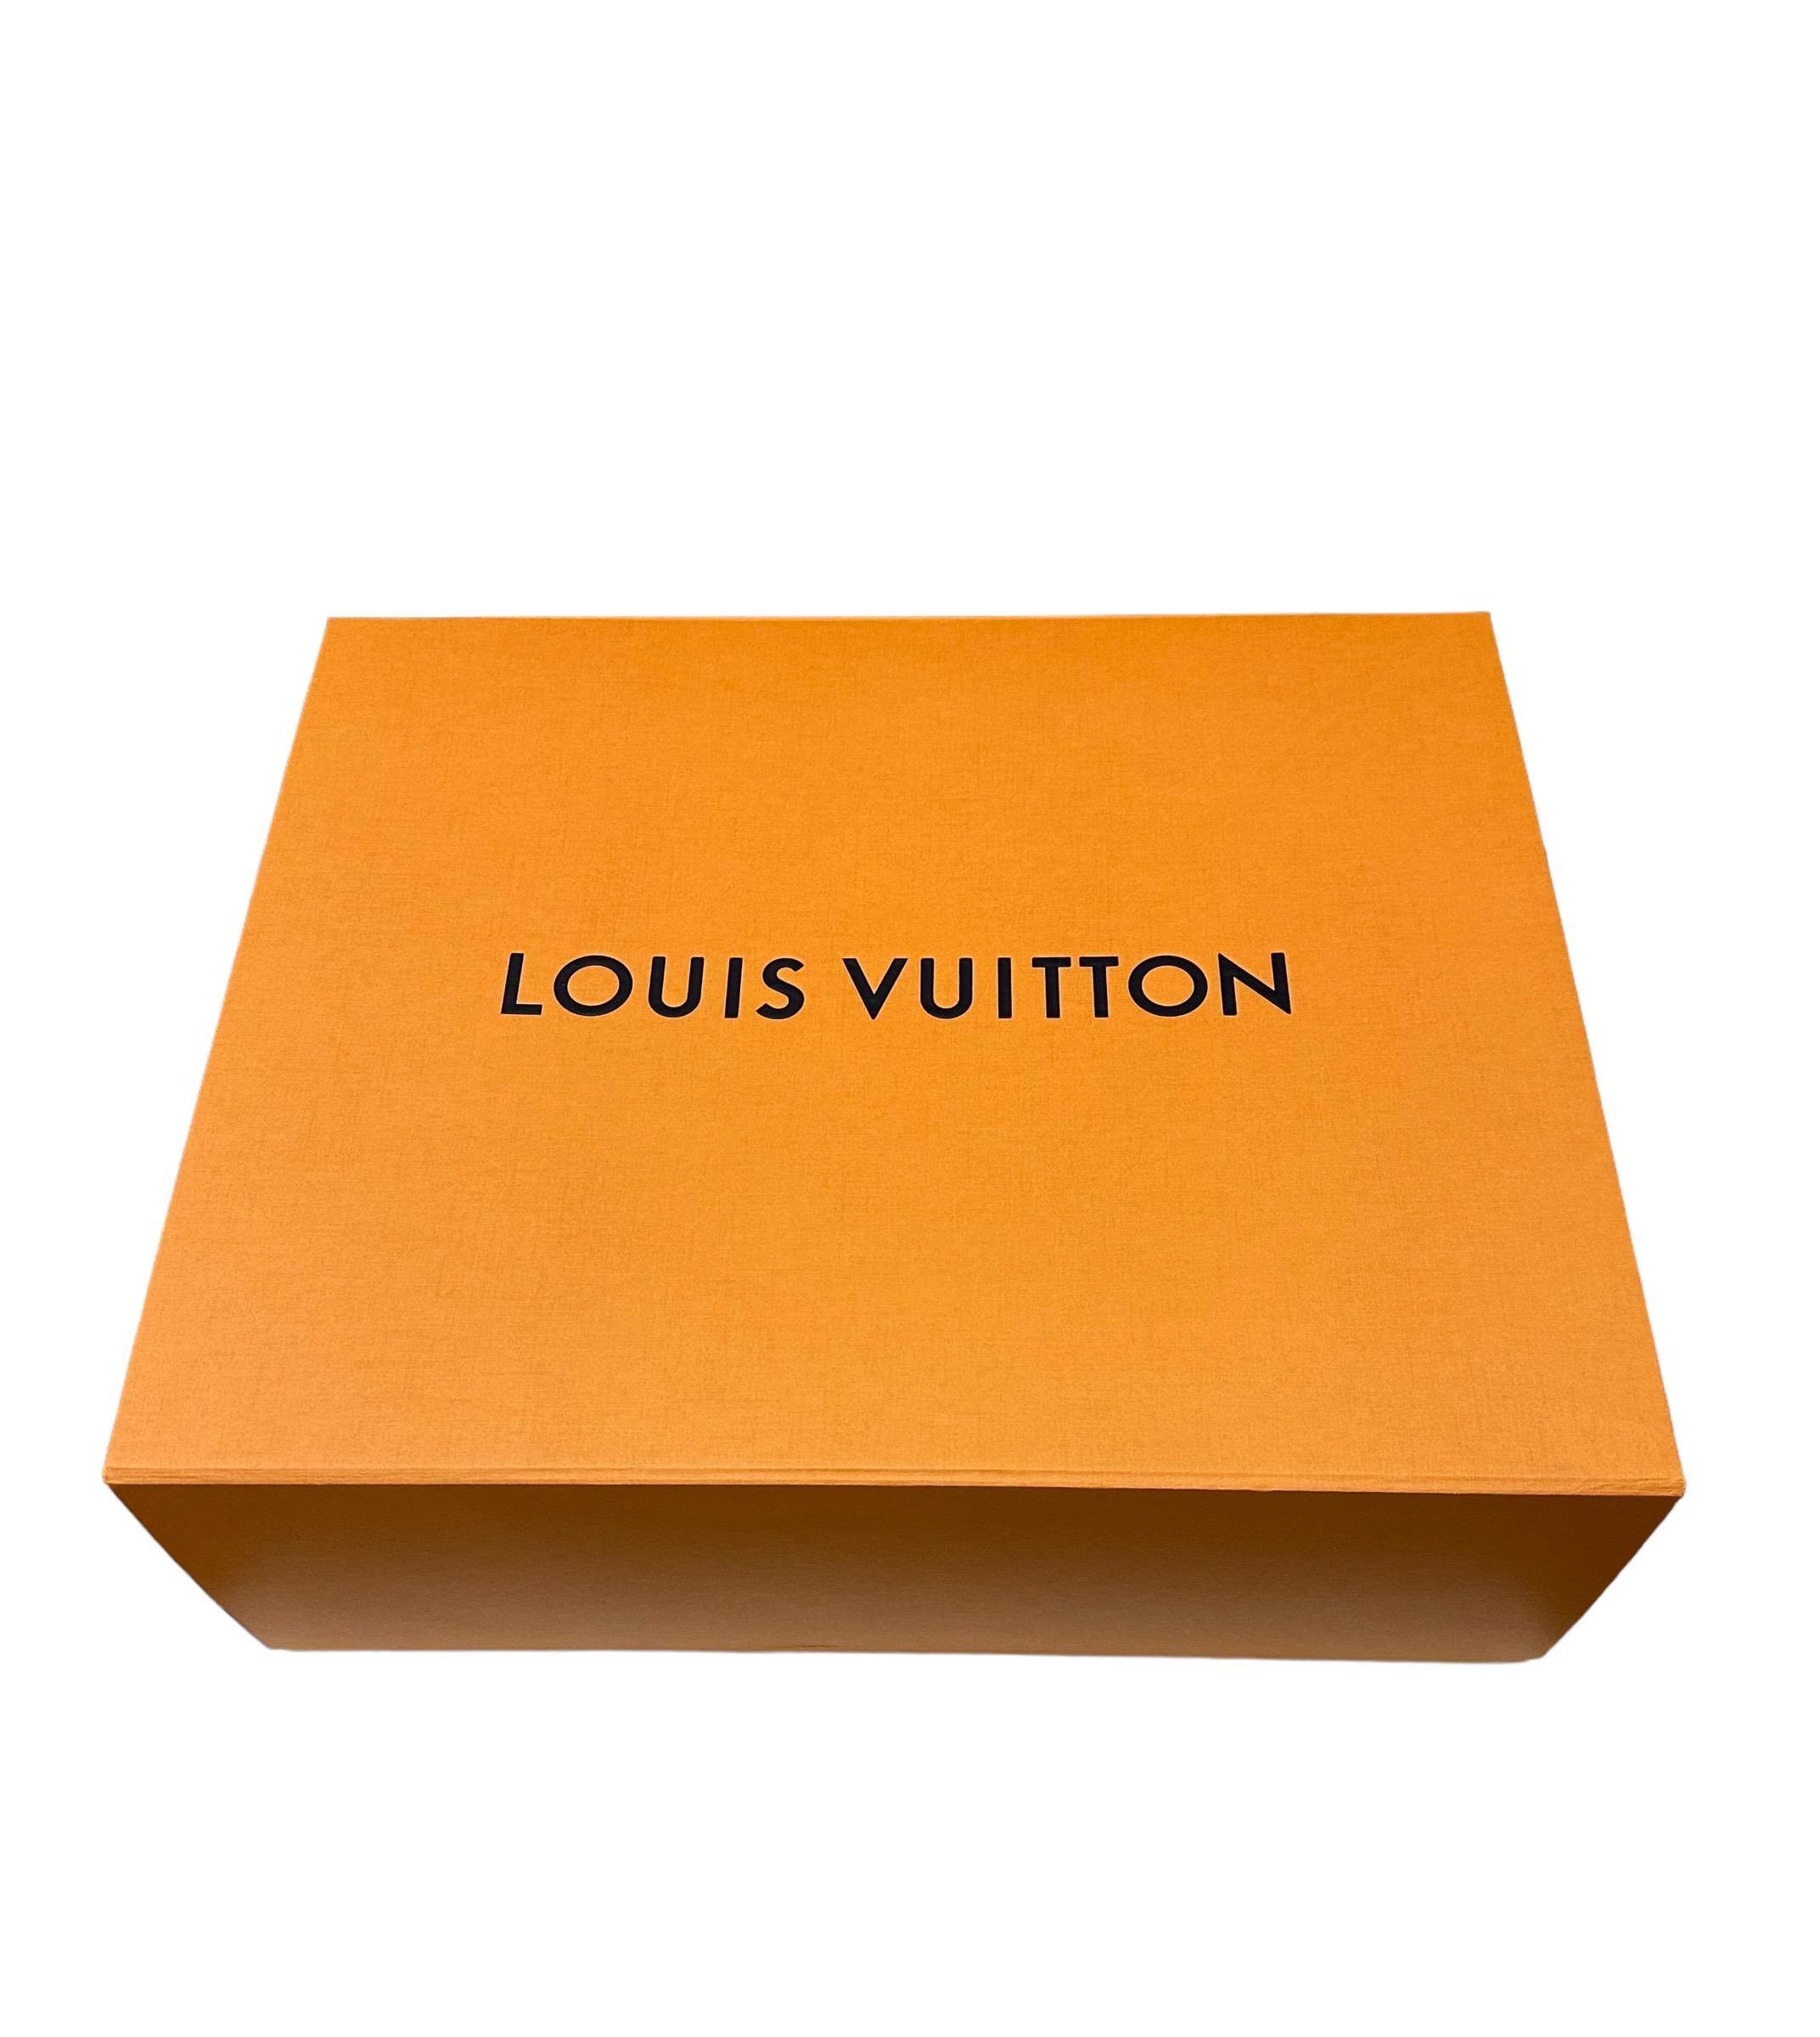 Louis Vuitton Urs Fischer Limited Edition Artycapucines BB Tasche in limitierter Auflage  im Angebot 14